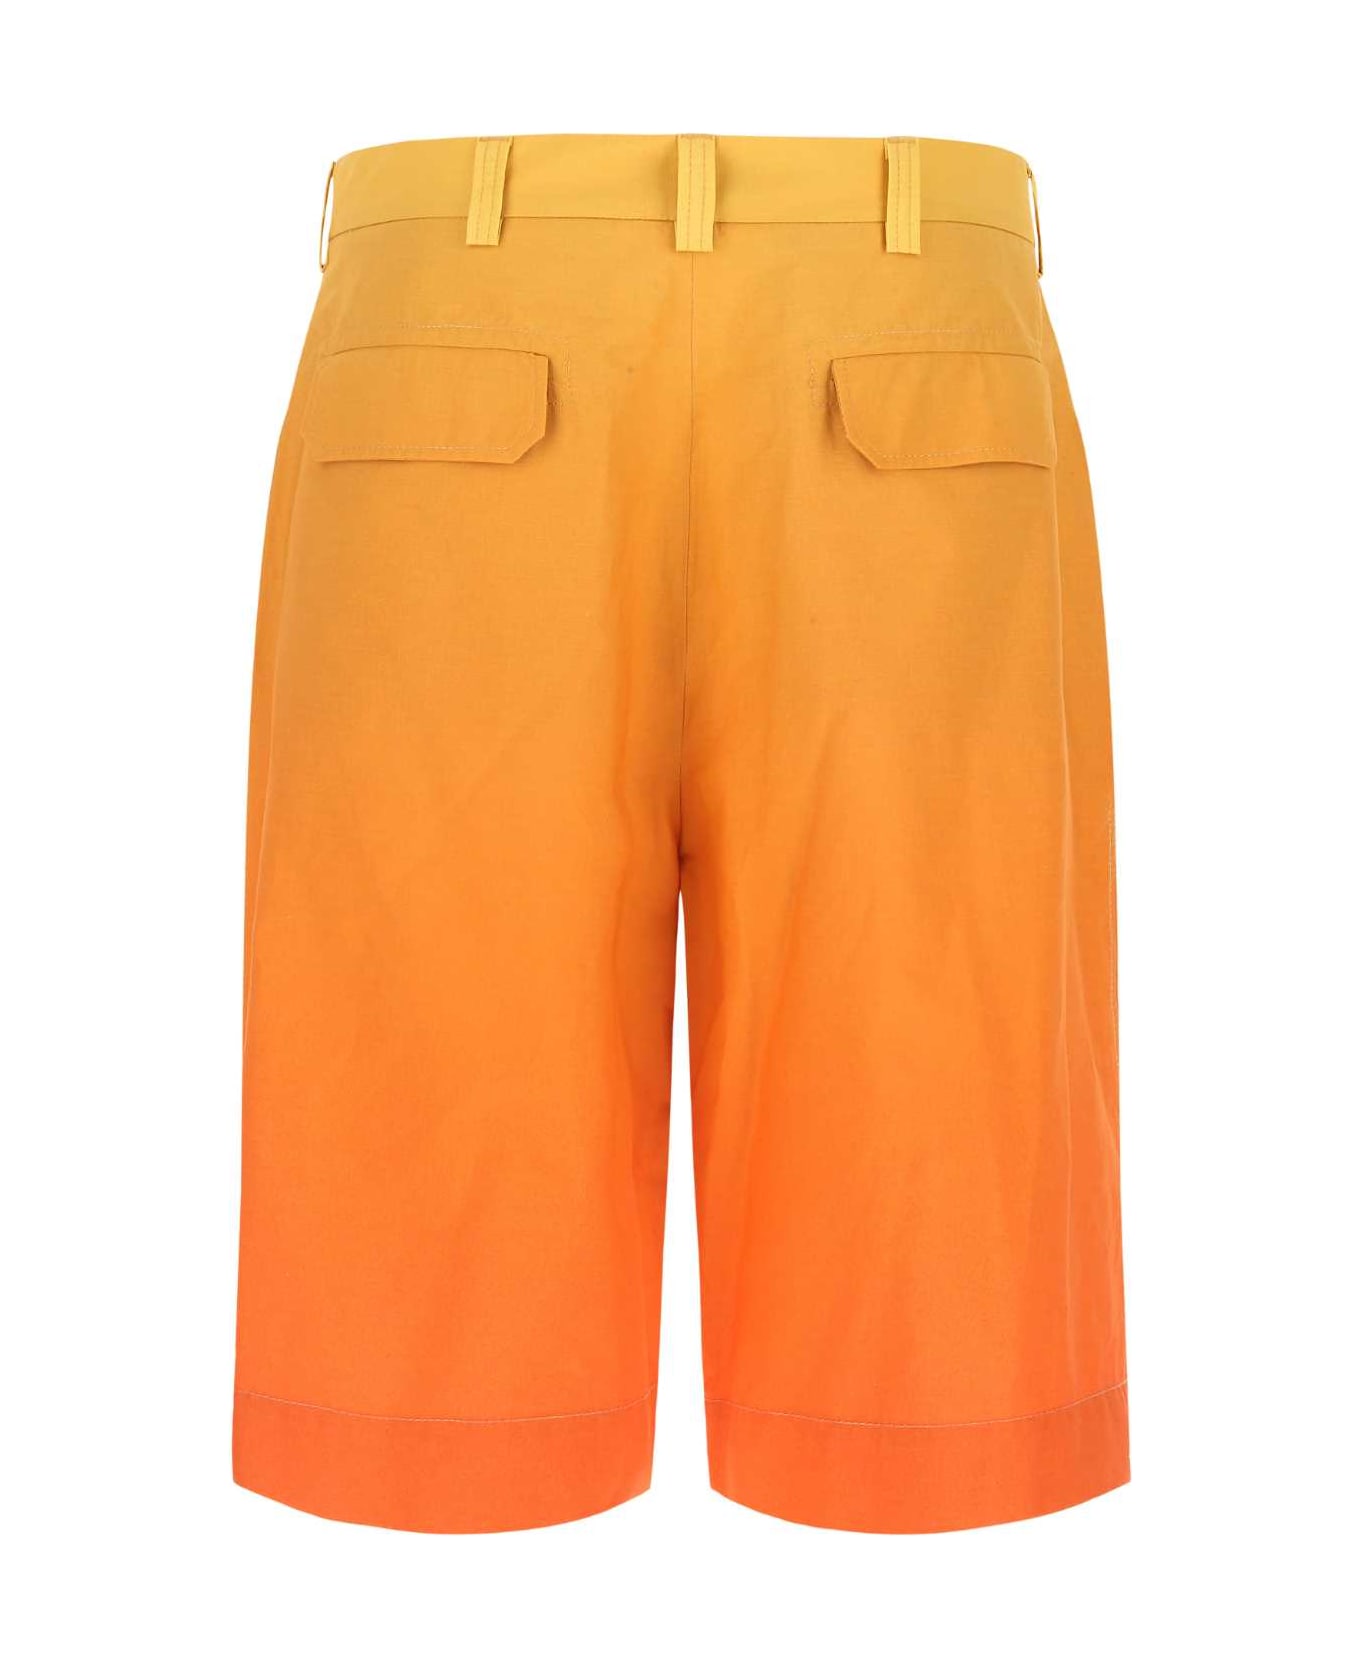 Etro Multicolor Cotton Bermuda Shorts - 0750